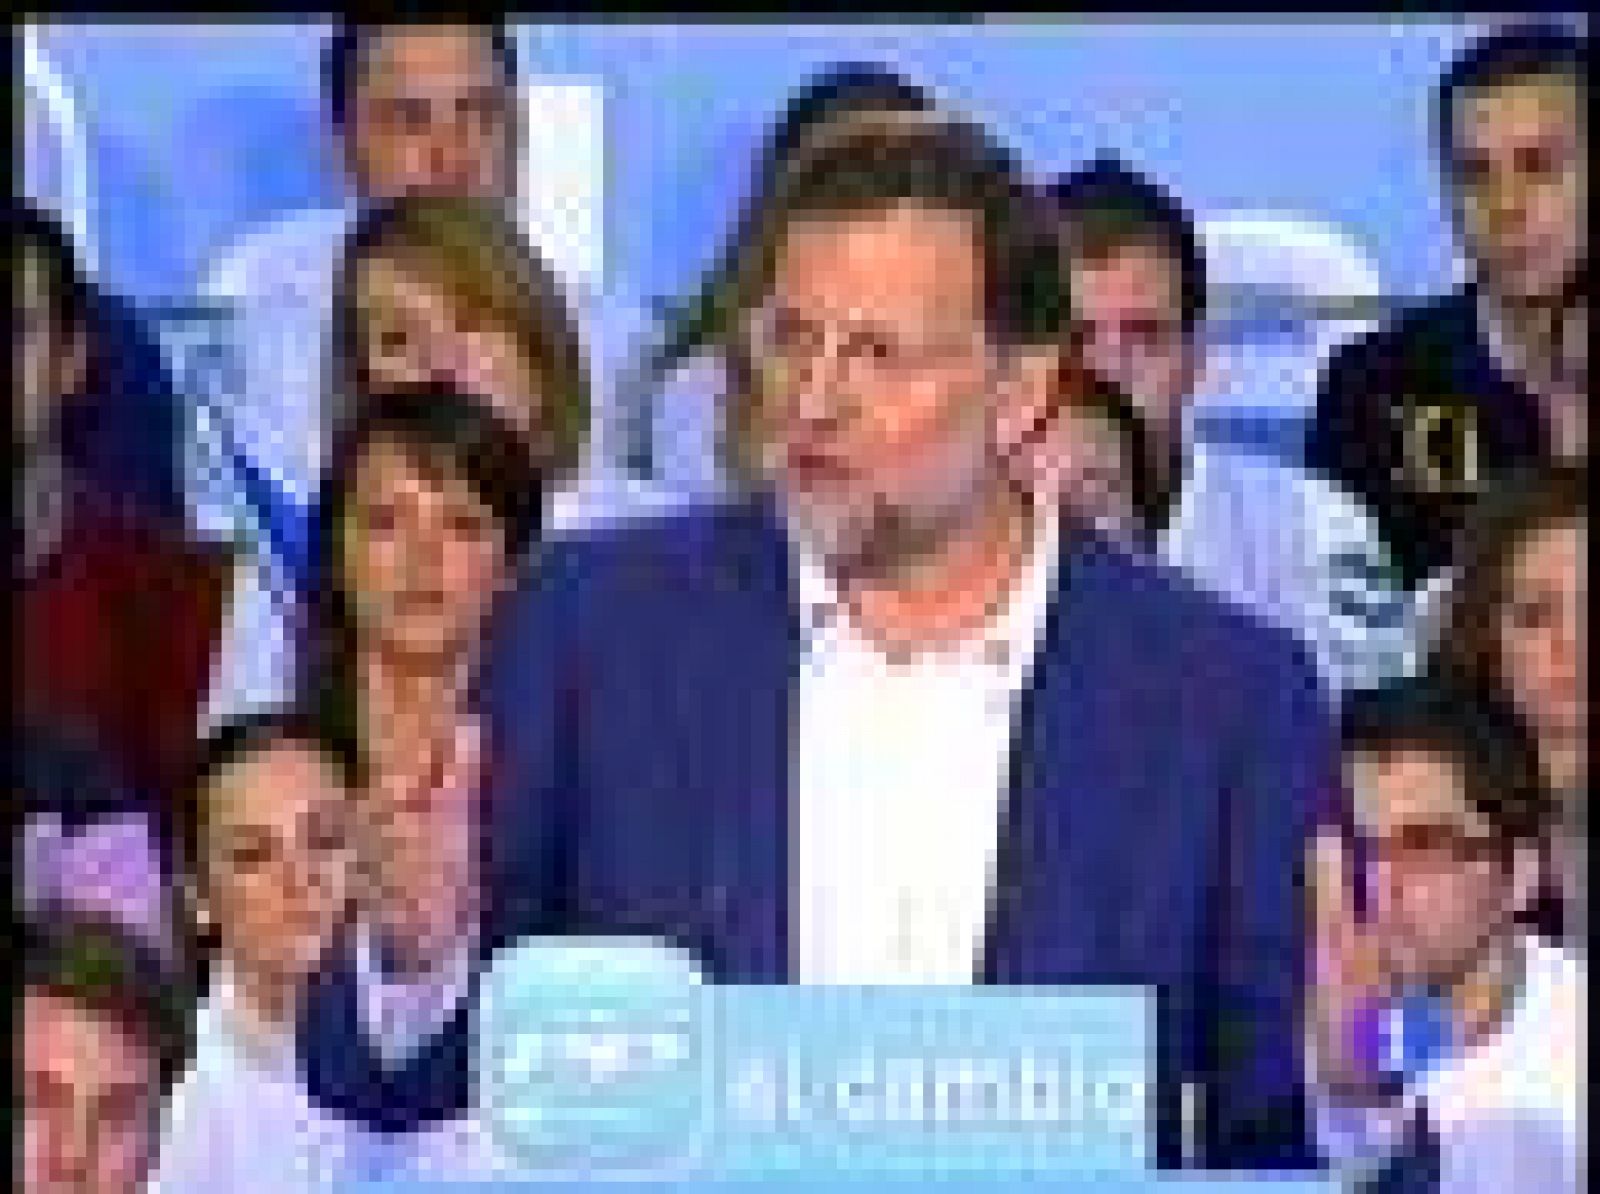 Rajoy acusa al Gobierno de padecer un "déficit de credibilidad insuperable"